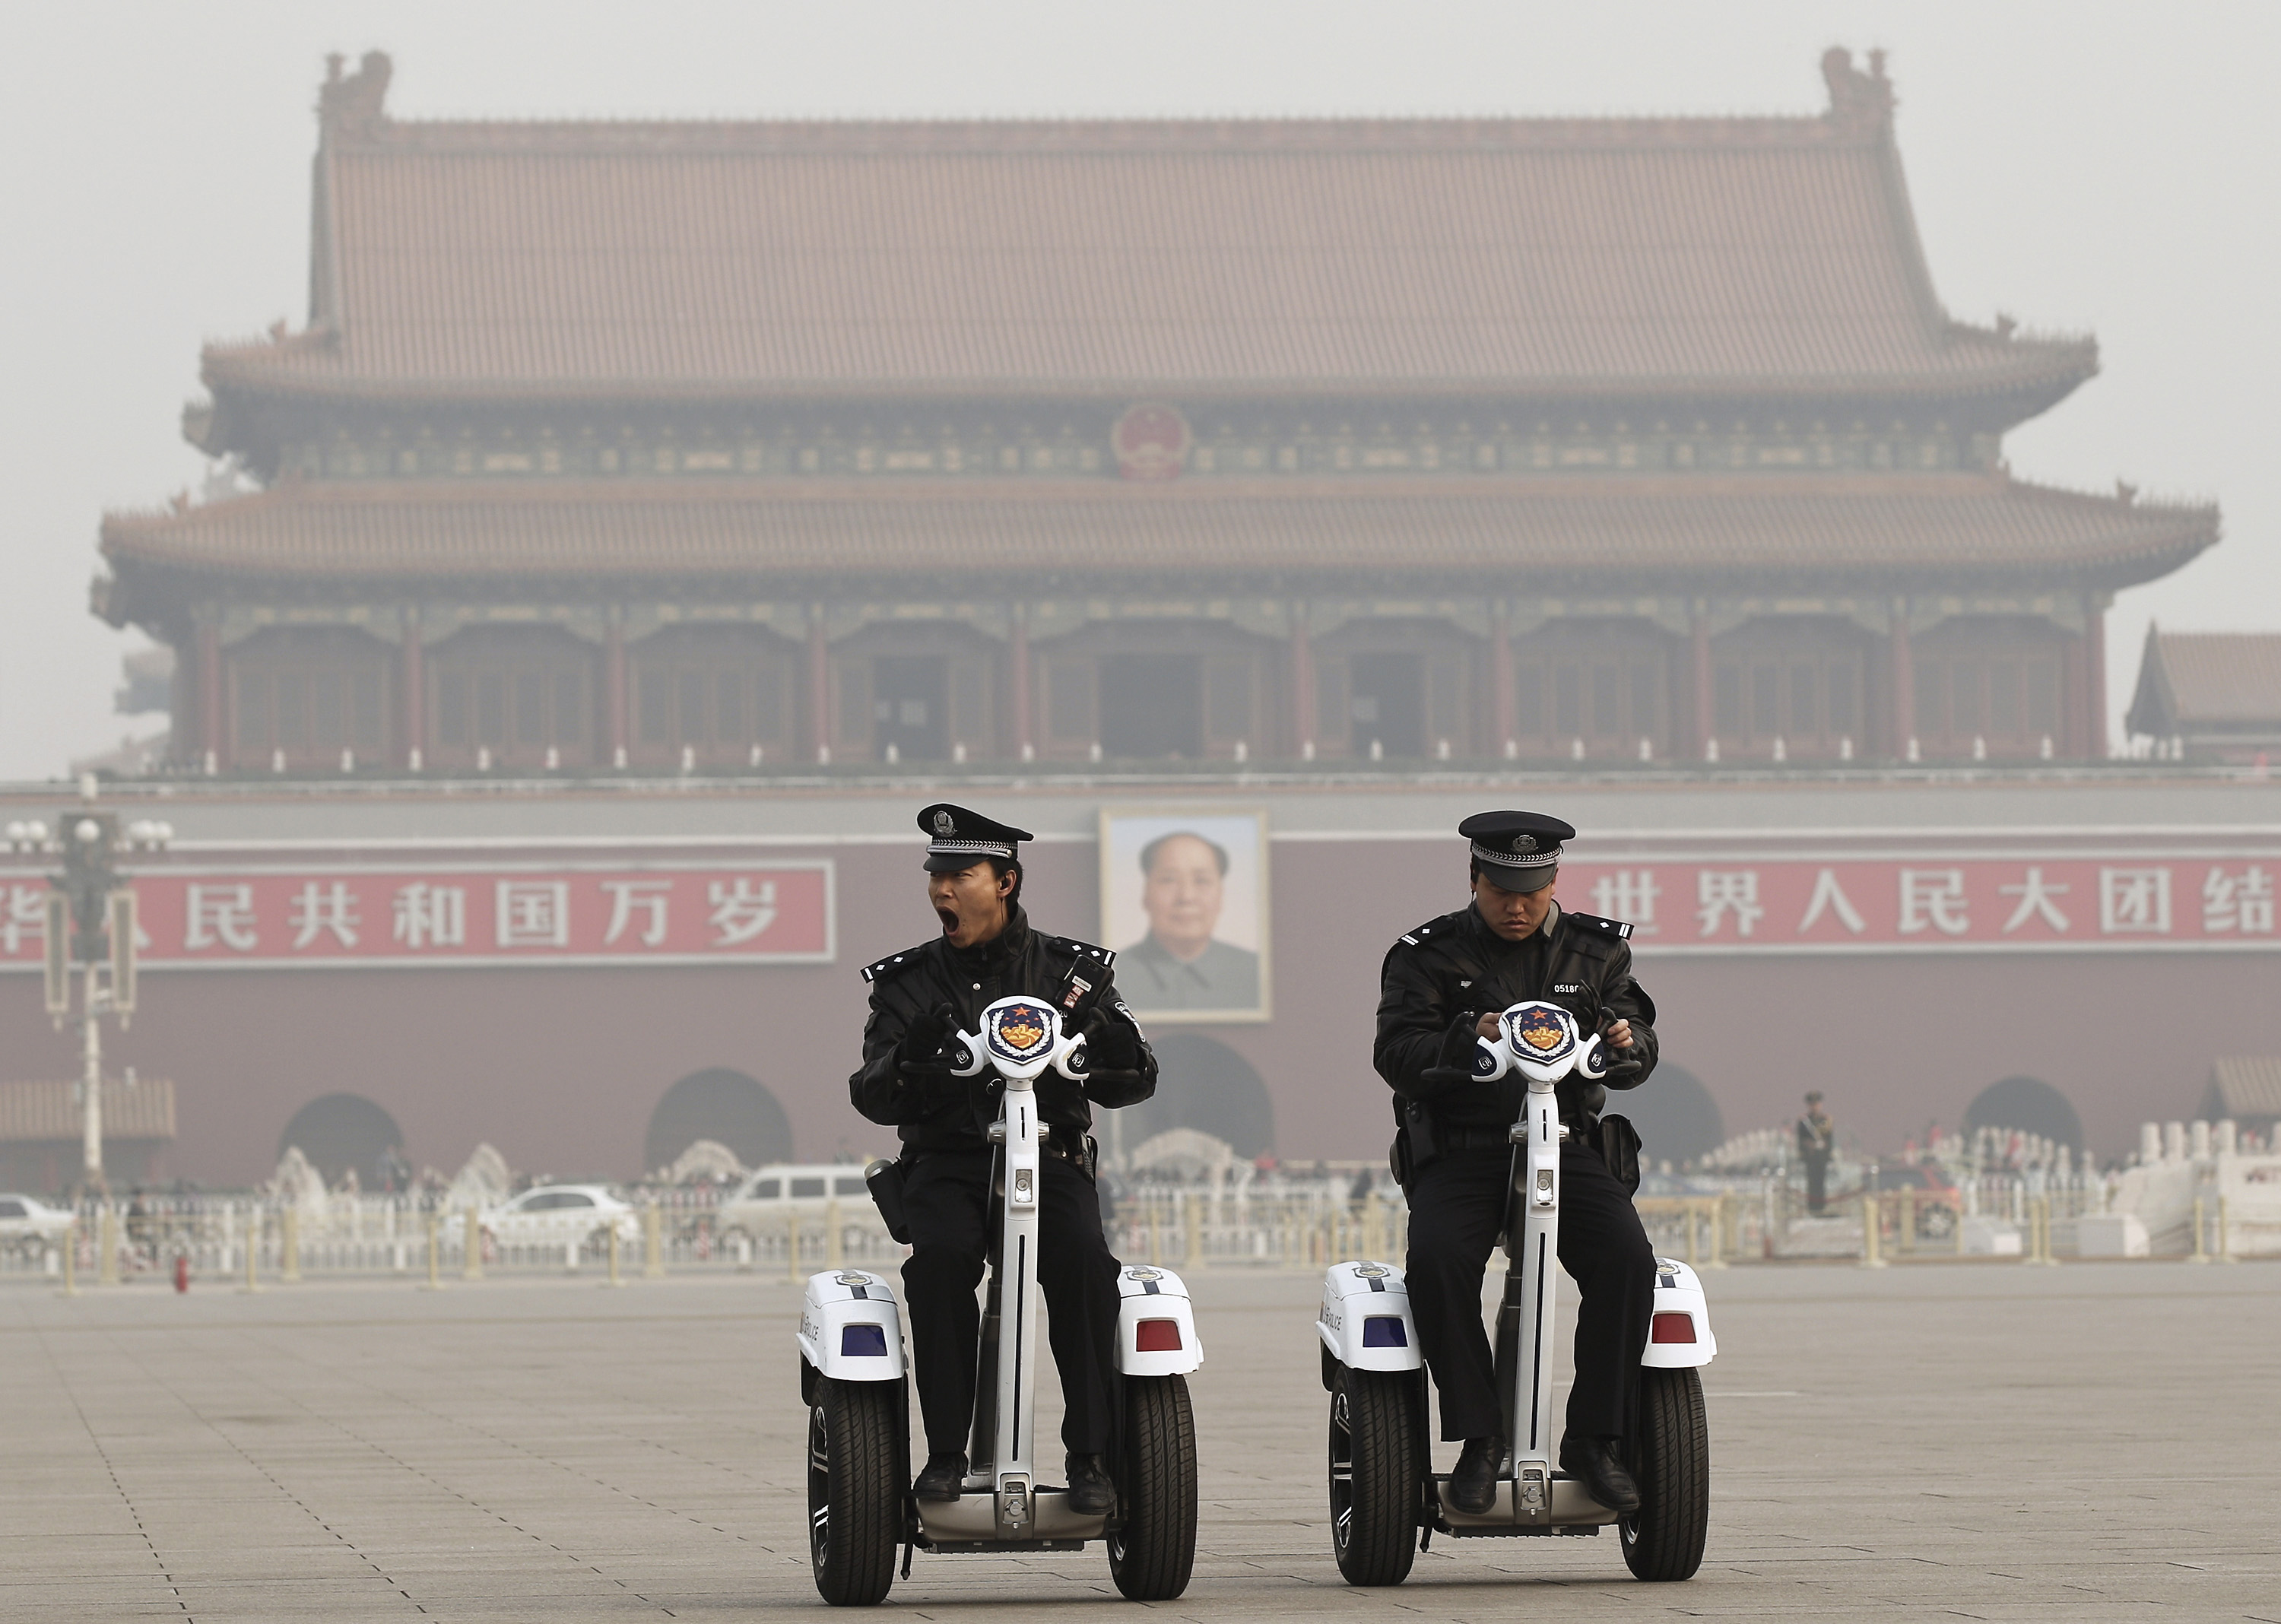 Den kinesiska ordningsmakten bevakar torget hårt, även på en del okonventionella sätt.